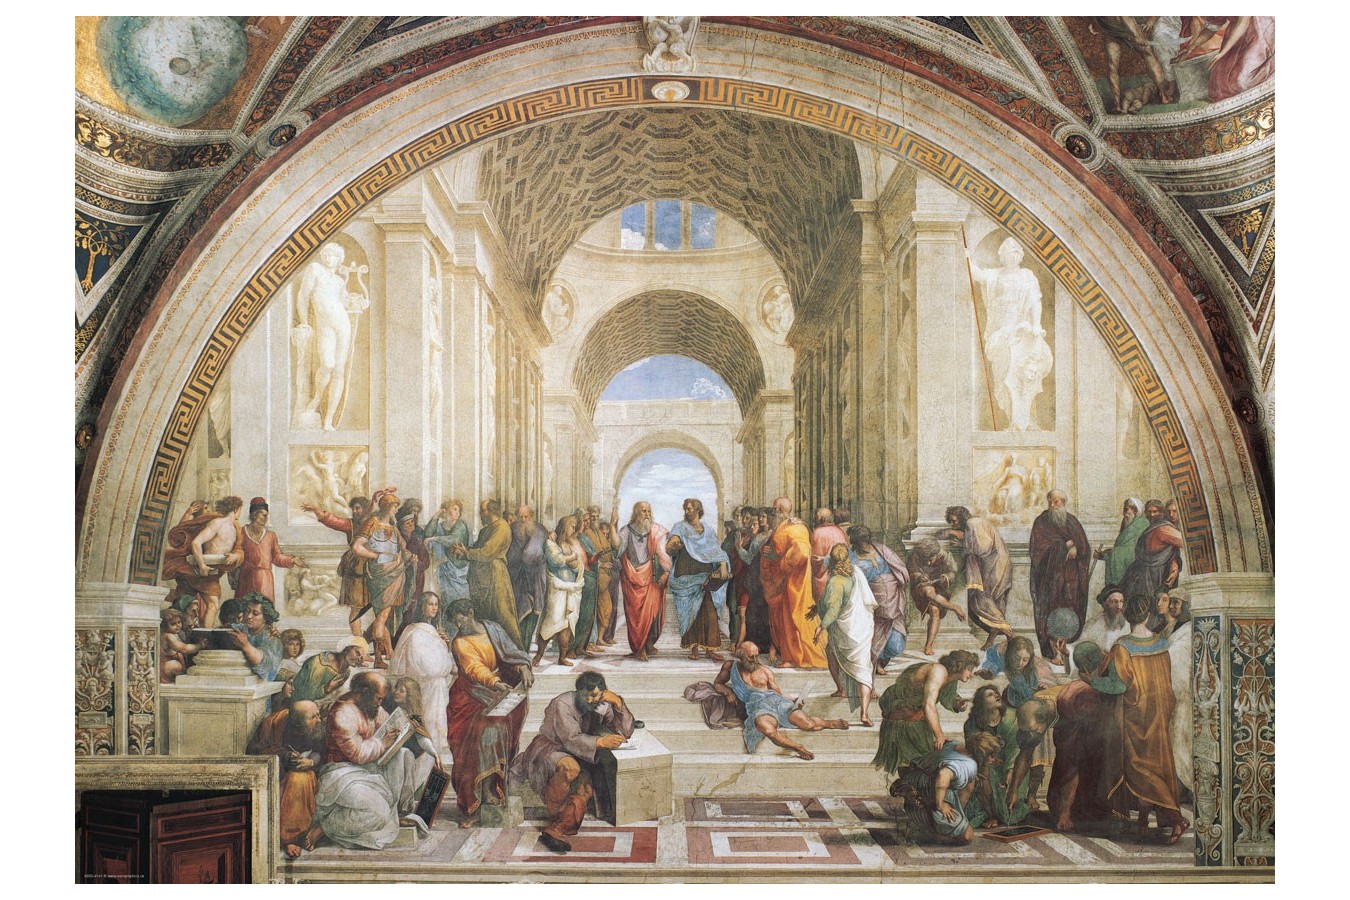 Puzzle Eurographics - Raphael: Die Schule von Athen, 1000 piese (6000-4141)